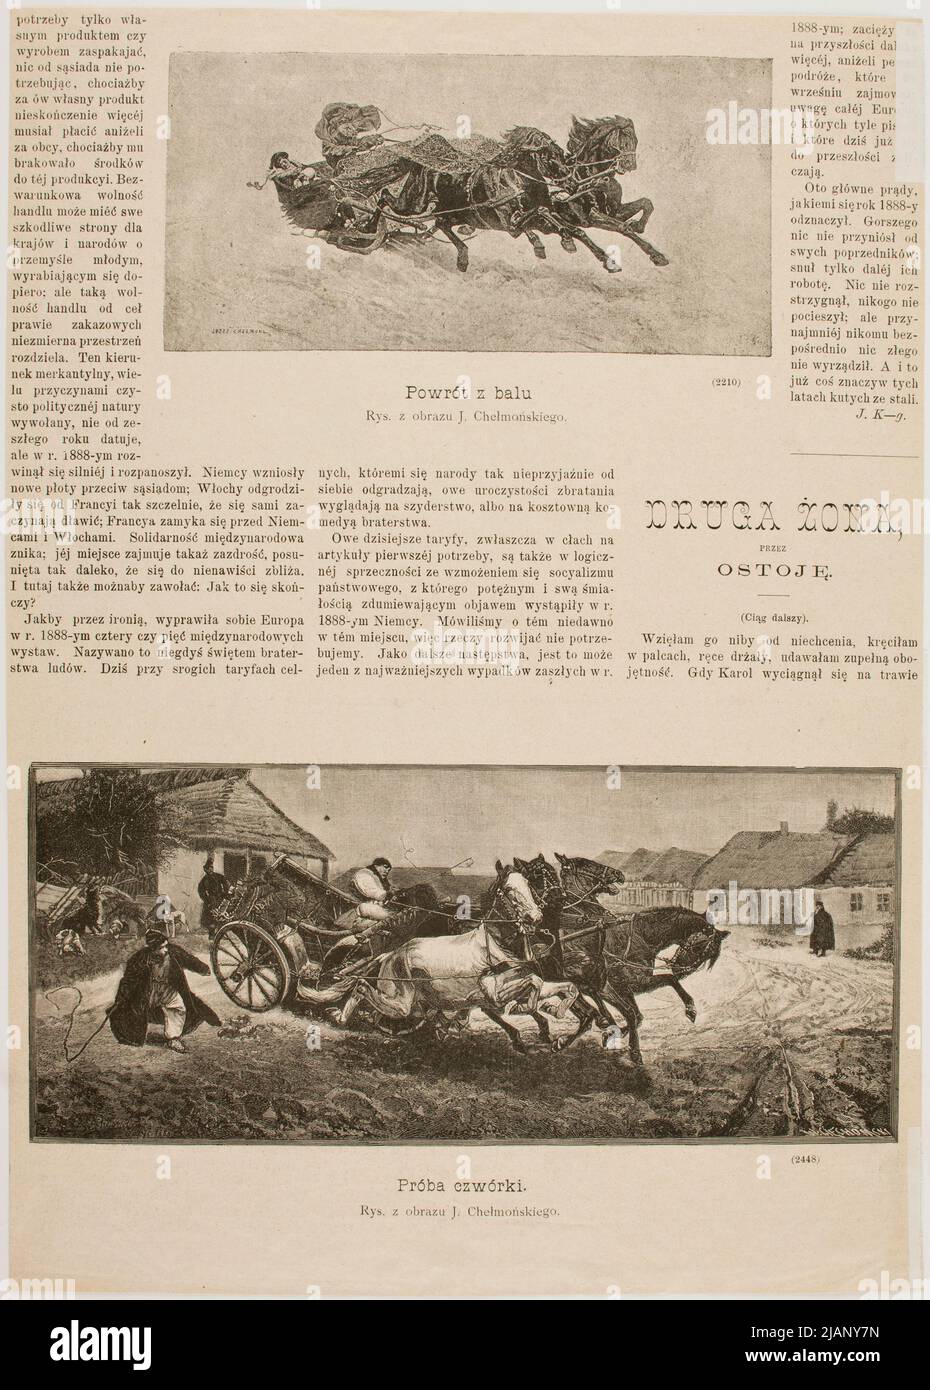 Quatre Test selon l'image de Józef Chełmoński. Chastate de l'hebdomadaire illustré 1889 (1) 36 Ciechomski, Walenty (N.N.), Chest ski, Józef (1849 1914) Banque D'Images